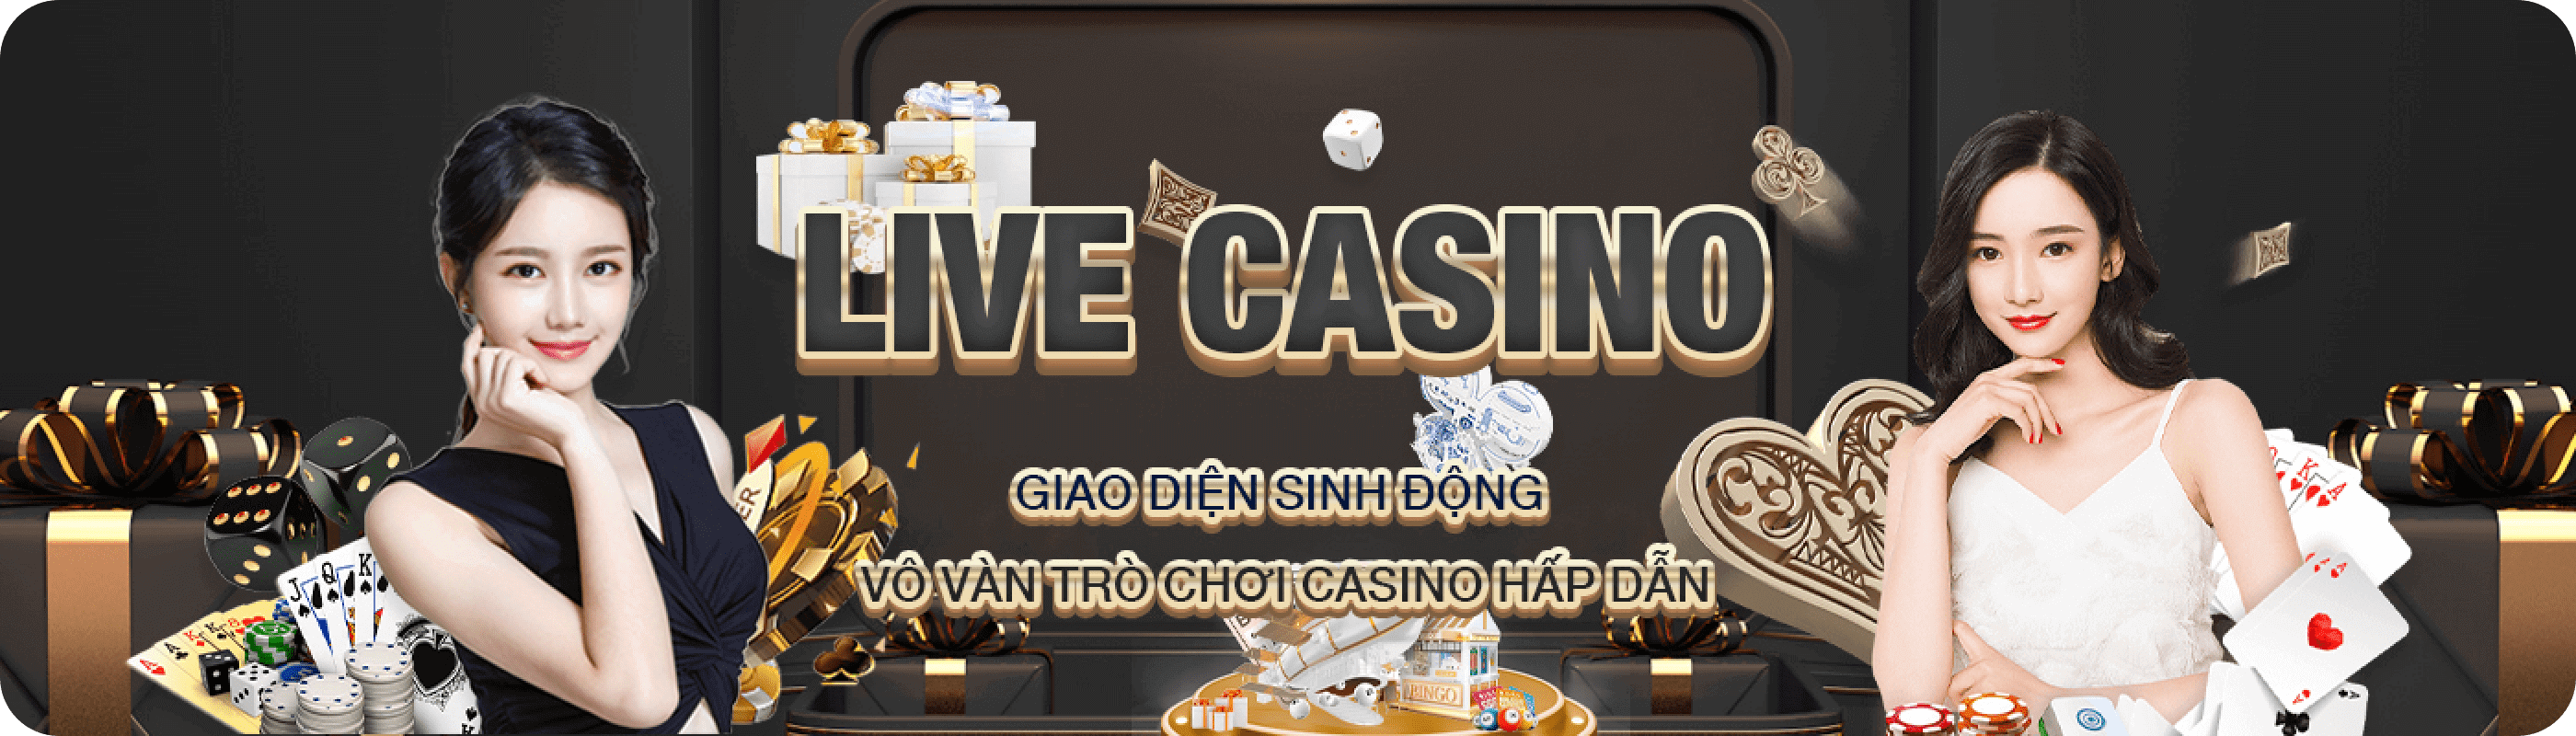 Sòng bạc trực tuyến – hình thức LIVE CASINO